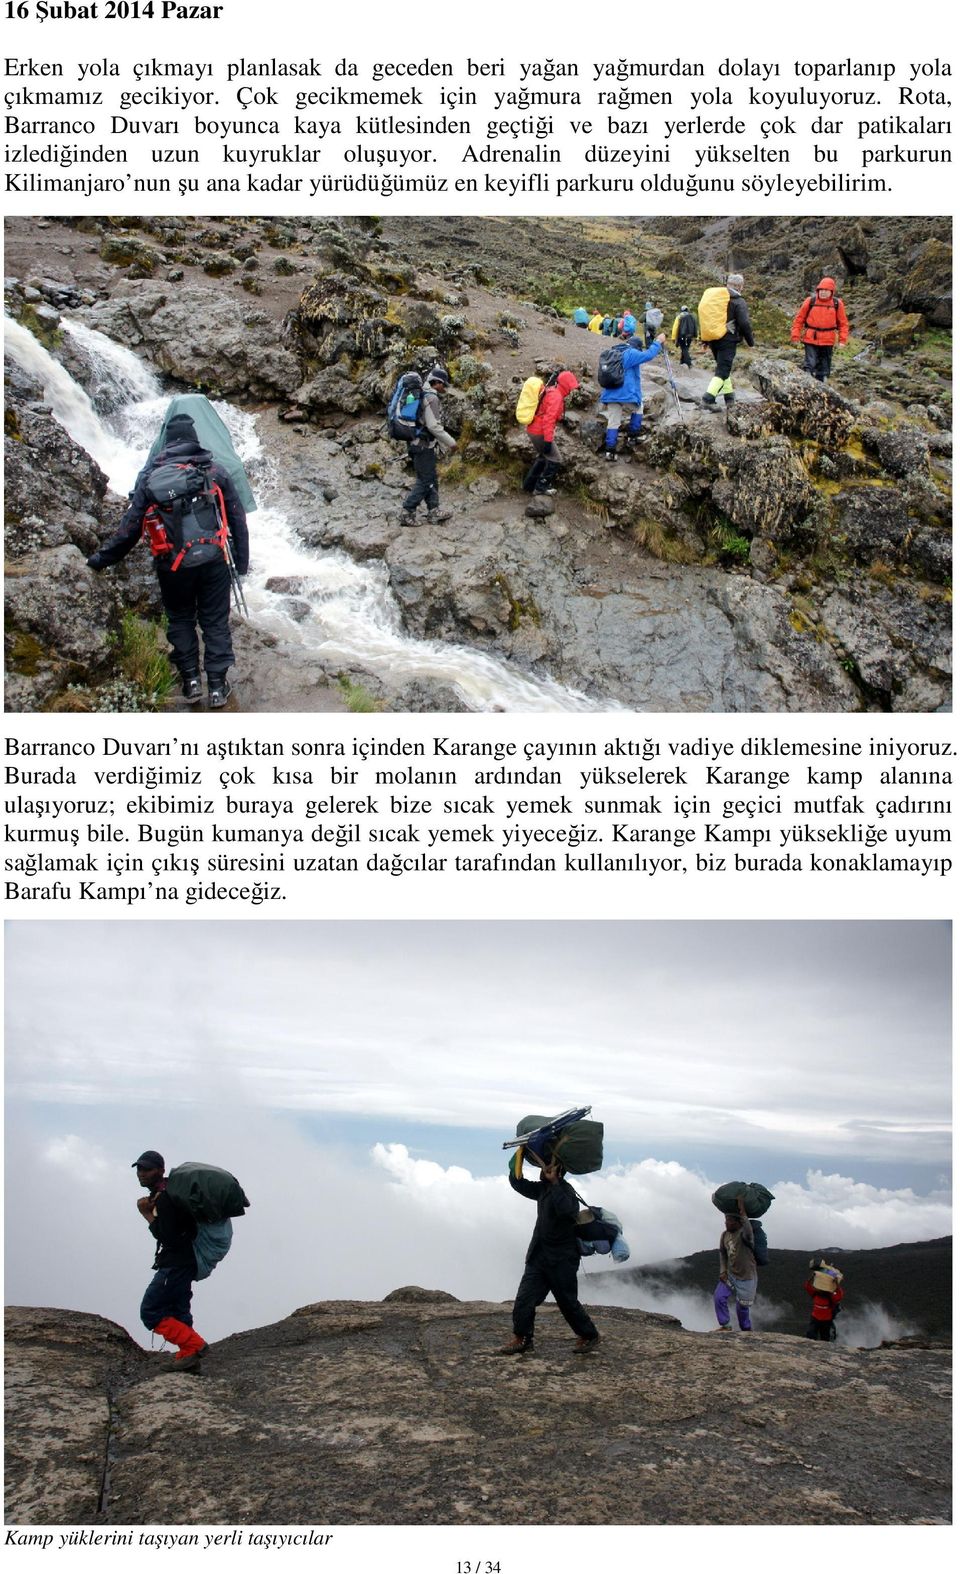 Adrenalin düzeyini yükselten bu parkurun Kilimanjaro nun şu ana kadar yürüdüğümüz en keyifli parkuru olduğunu söyleyebilirim.